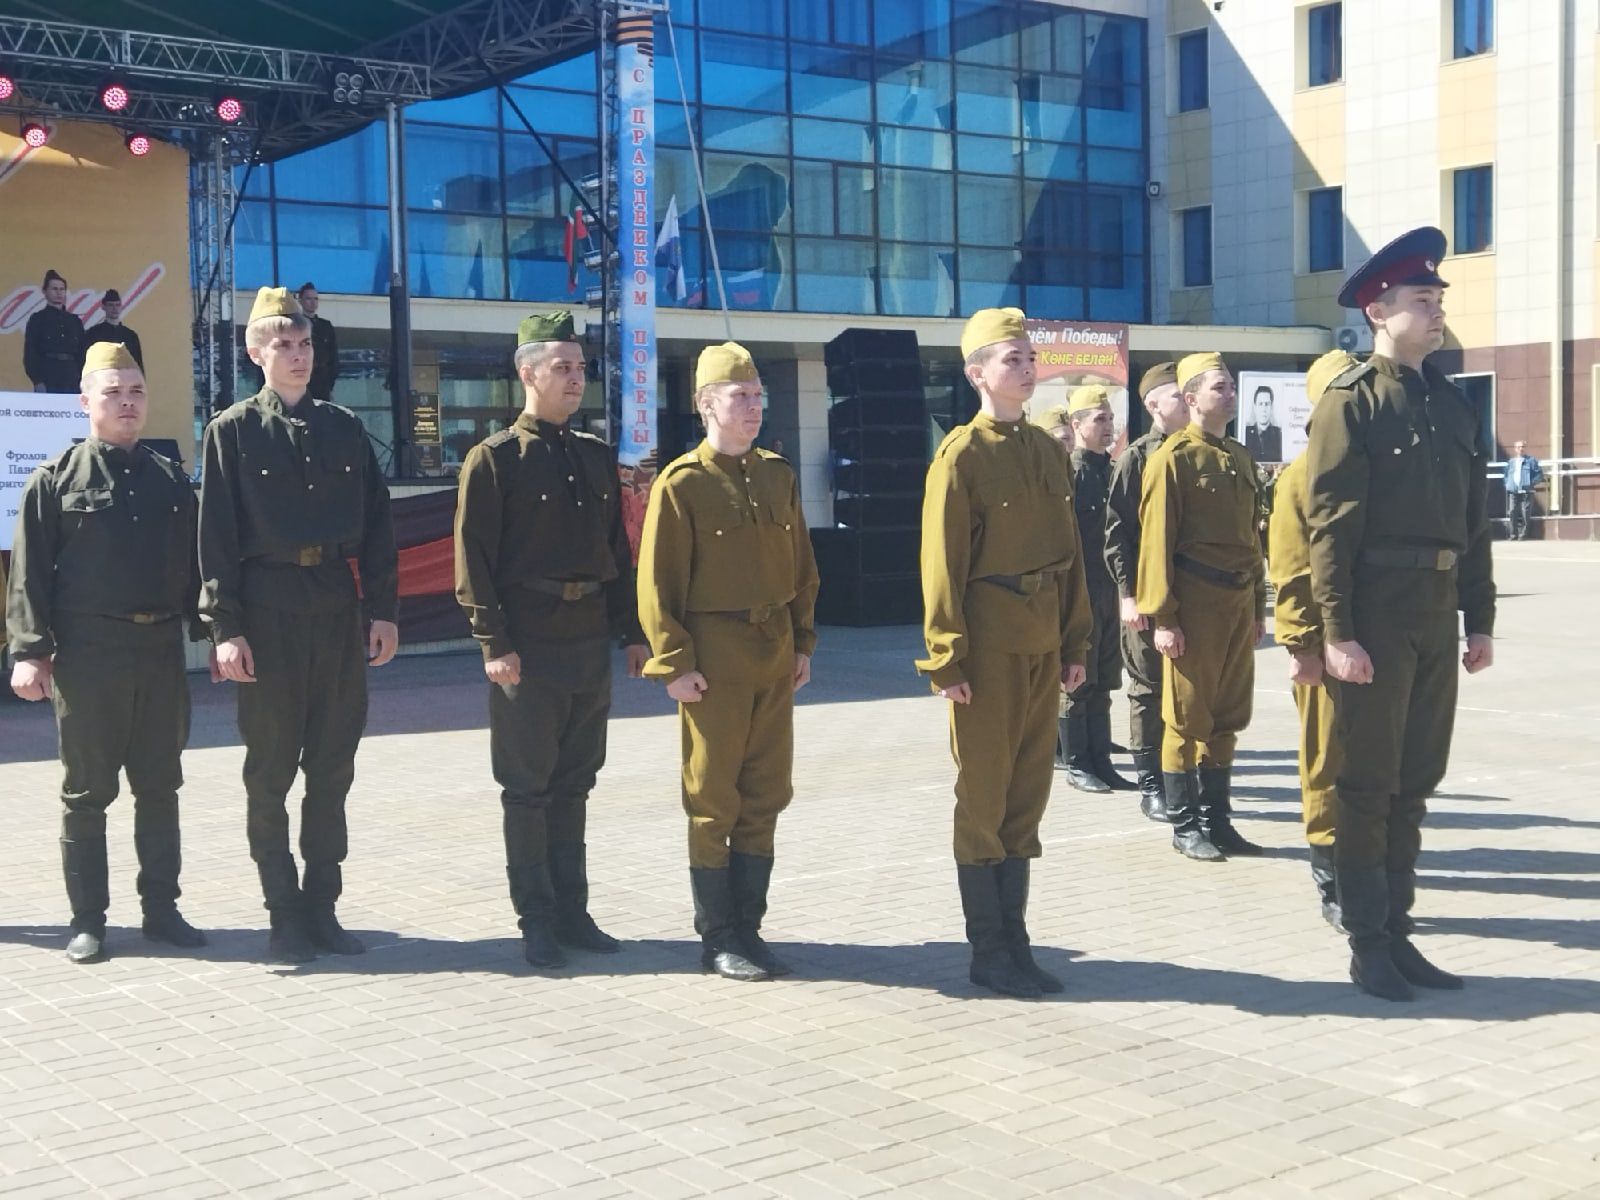 Празднование Дня Победы в Менделеевске началось с театрализованной постановки и шествия колонн